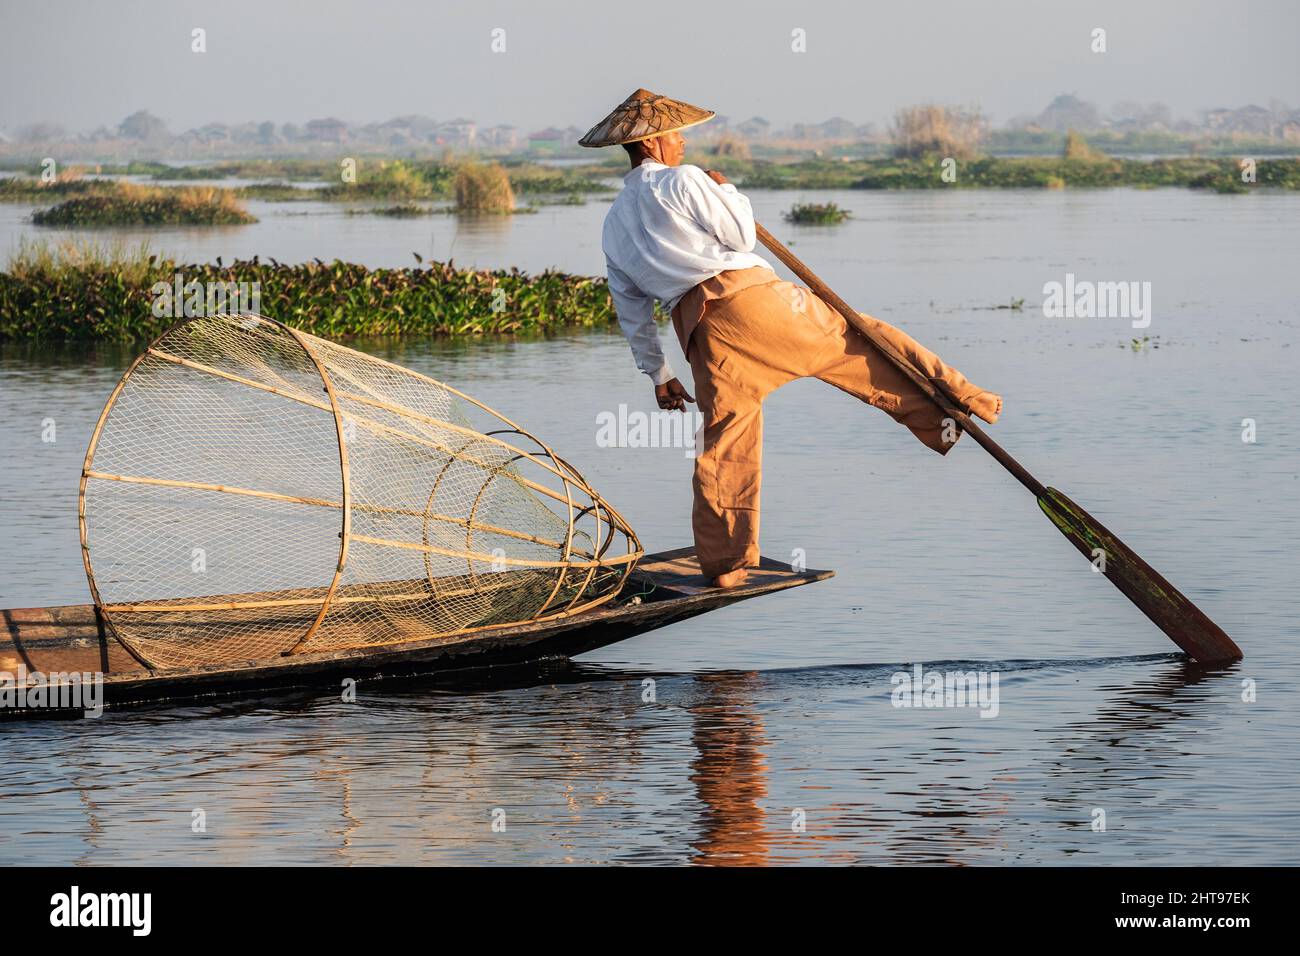 Los pescadores de Intha remar en la pierna al estilo tradicional en el Lago Inle, Estado de Shan, Myanmar (Birmania). Foto de stock